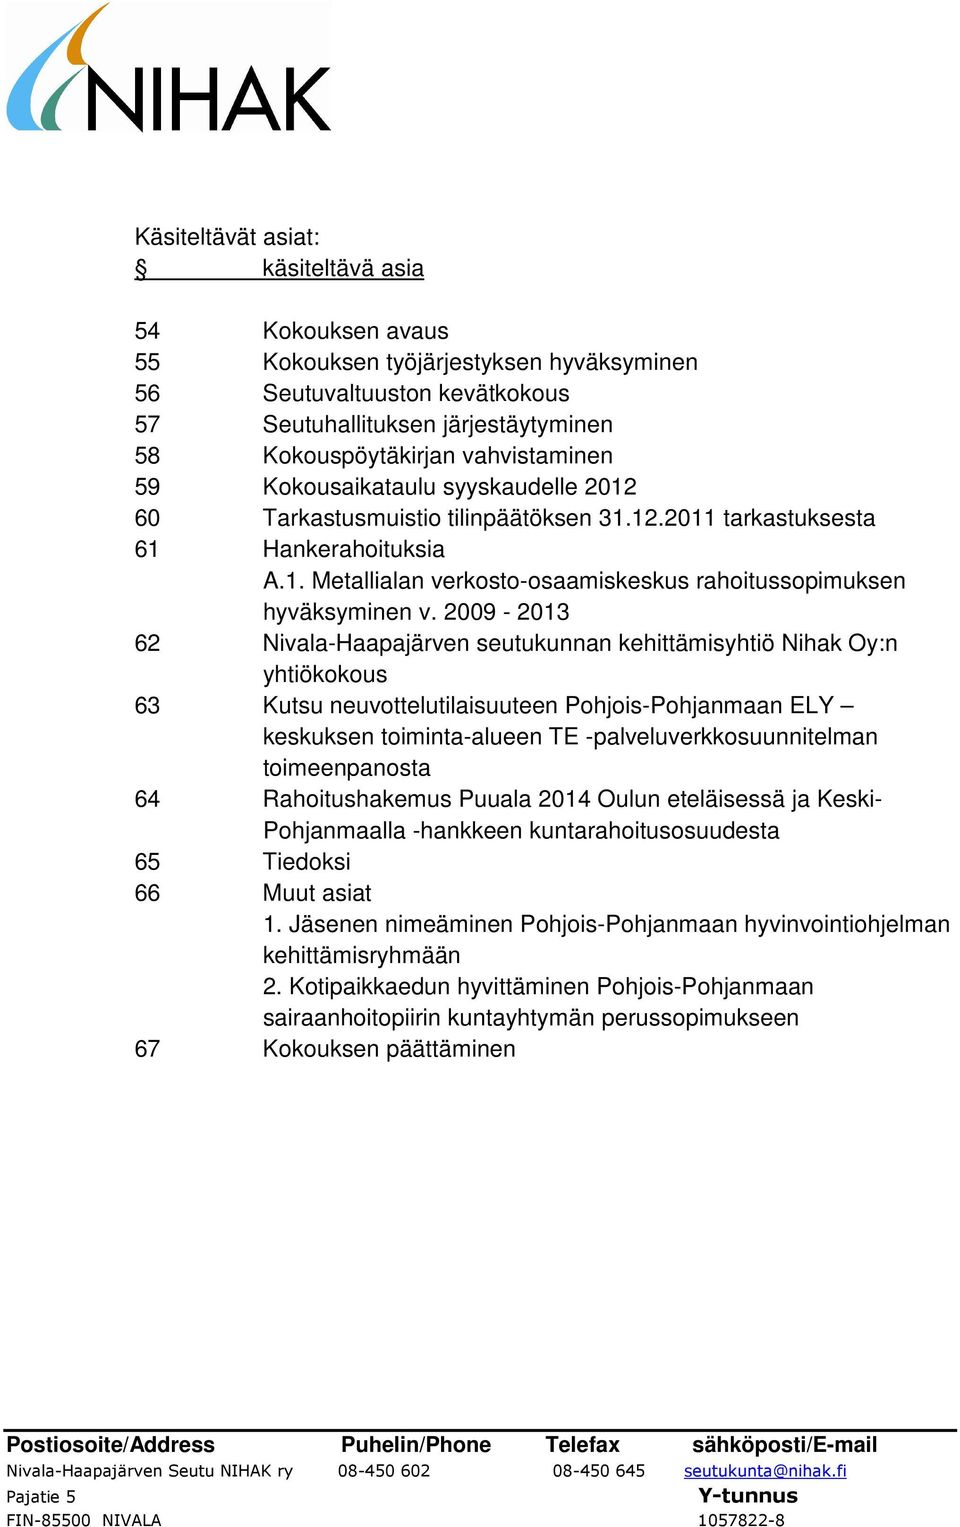 2009-2013 62 Nivala-Haapajärven seutukunnan kehittämisyhtiö Nihak Oy:n yhtiökokous 63 Kutsu neuvottelutilaisuuteen Pohjois-Pohjanmaan ELY keskuksen toiminta-alueen TE -palveluverkkosuunnitelman